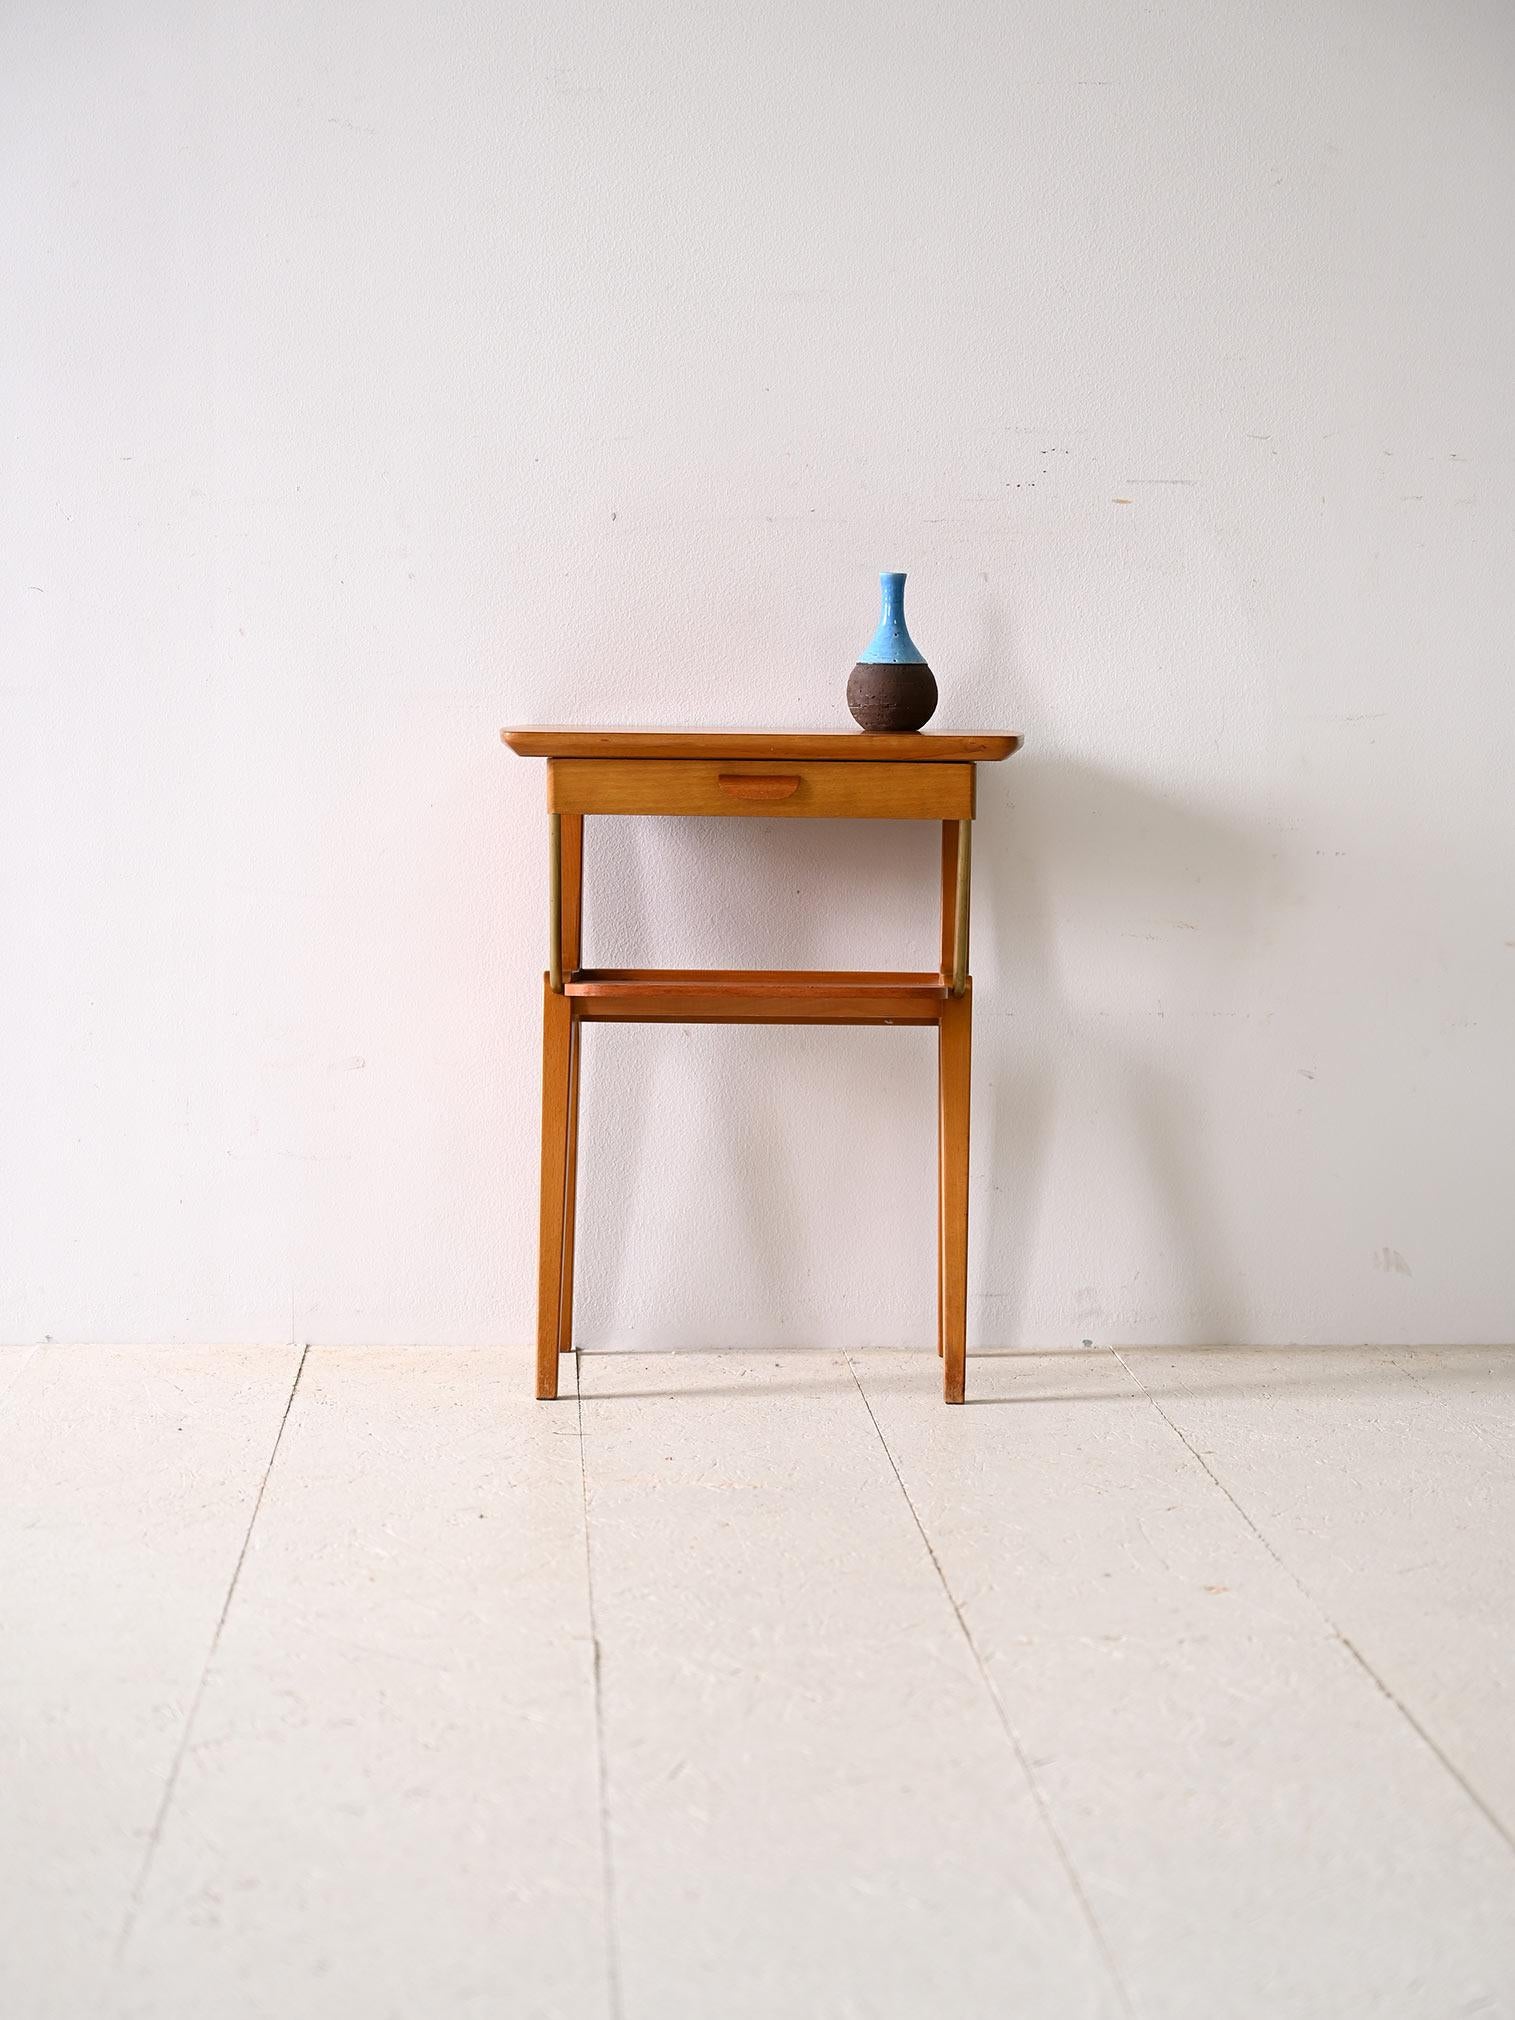 Skandinavischer modernistischer Nachttisch im Vintage-Stil.

Der geschnitzte Griff an der Schublade verleiht dem Design eine künstlerische Note, während die goldenen Metalldetails, wie die beiden Rohrstangen, die die Beine mit dem Regal verbinden,